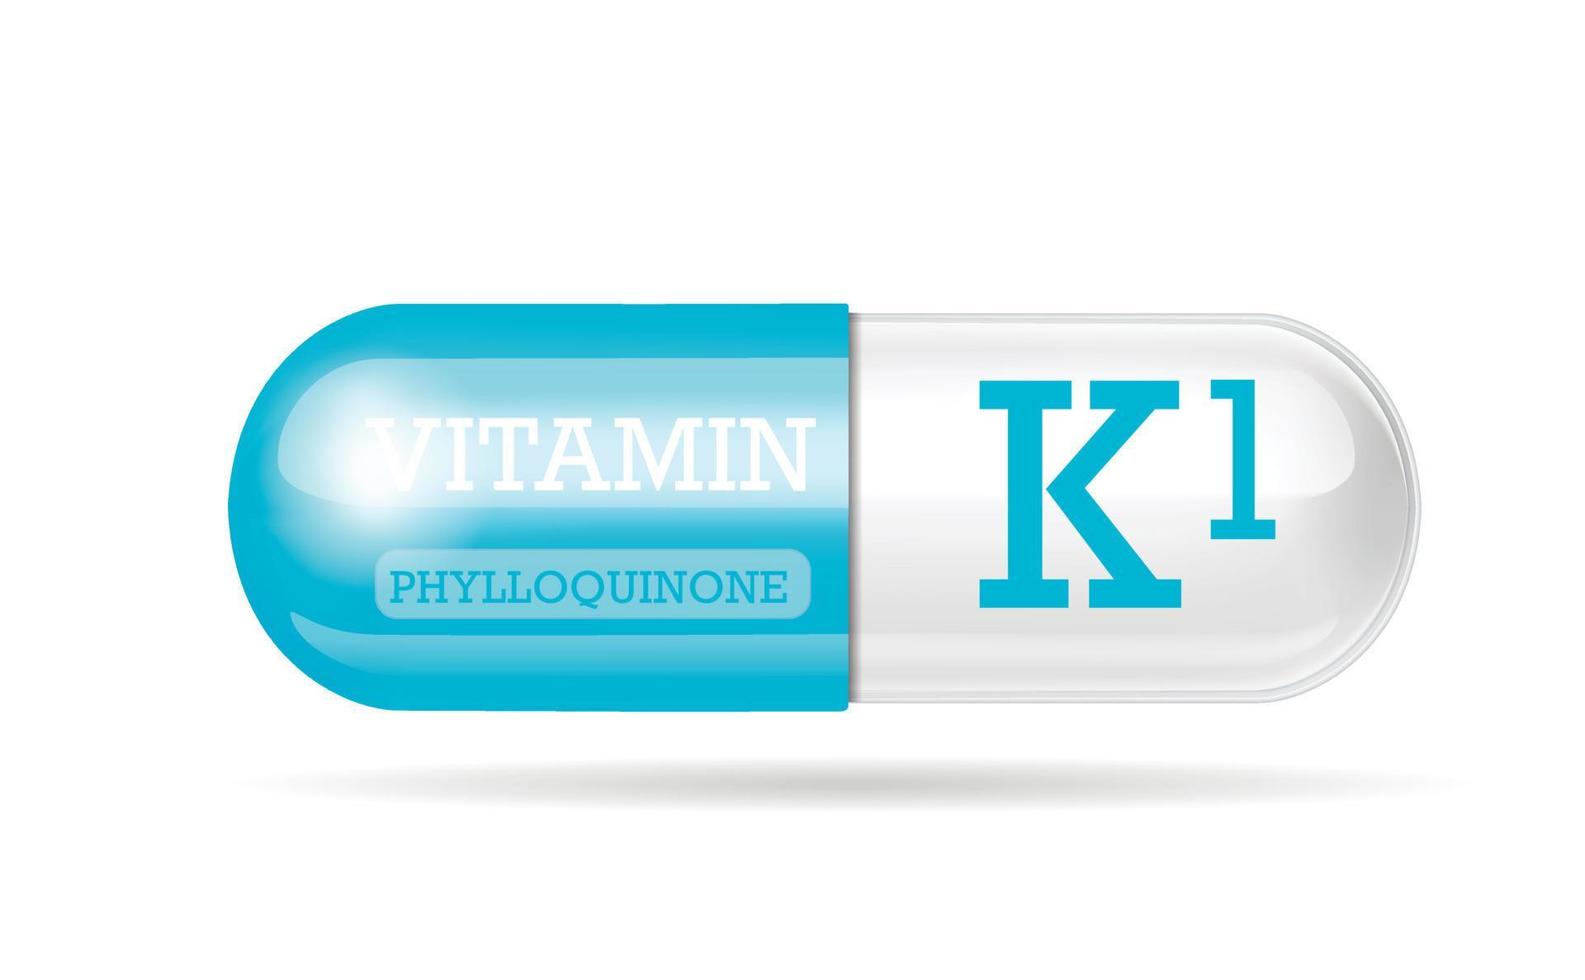 capsule van vitamine k1 blauw-witte structuur. 3D-vitaminecomplex met chemische formule. persoonlijke verzorging, schoonheidsconcept. ruimte kopiëren. vector illustratie